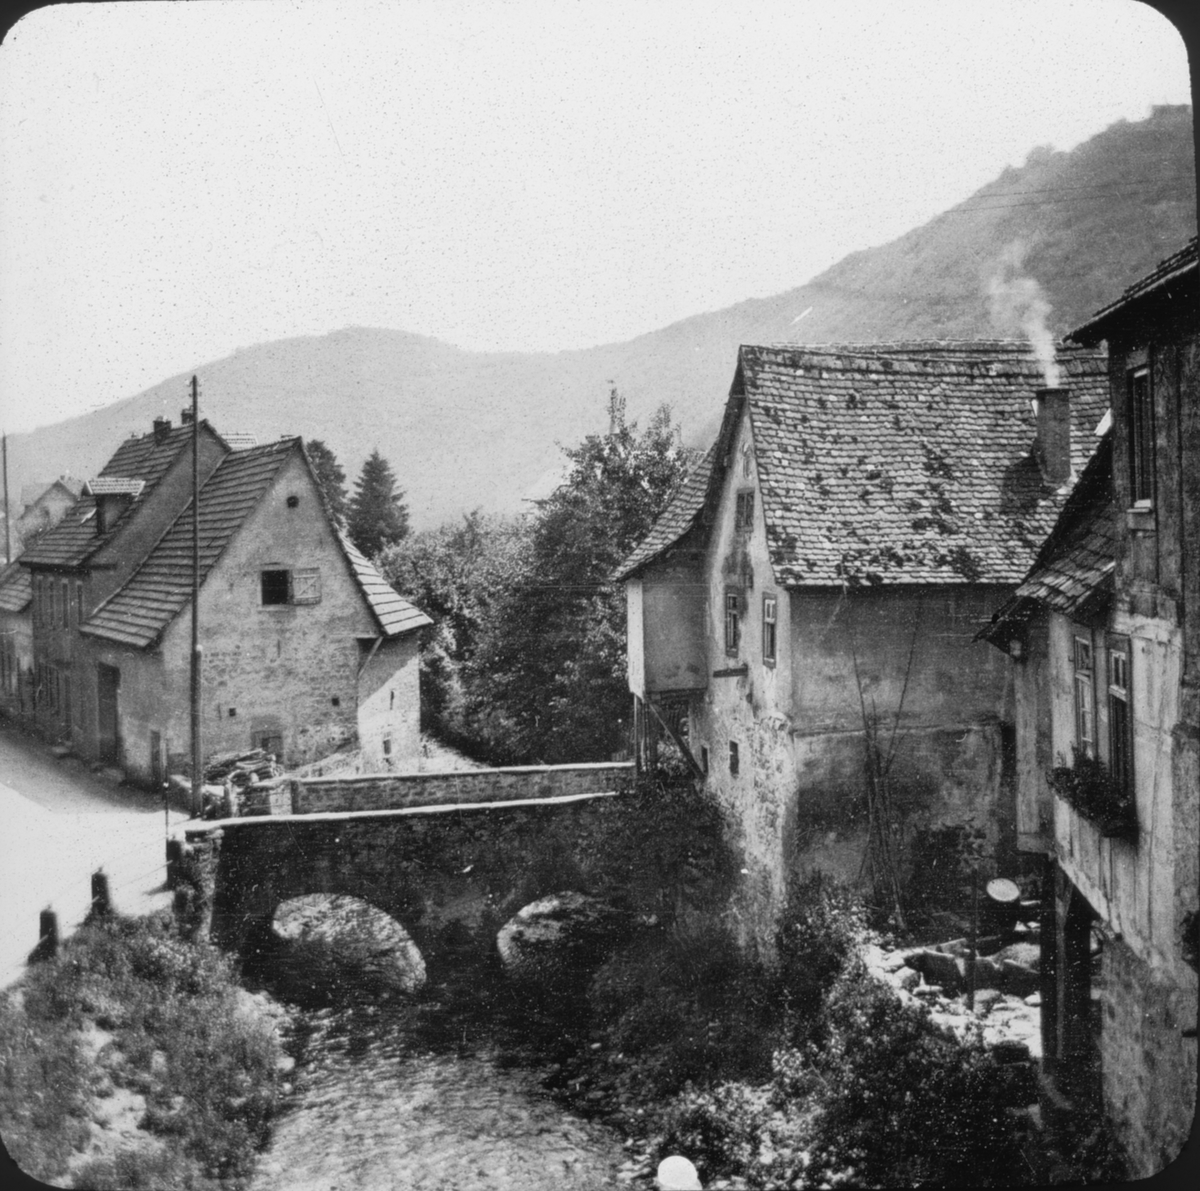 Skioptikonbild med motiv från Neckarsteinach.
Bilden har förvarats i kartong märkt: Resan 1907. Neckar 5. Heilbronn 3. 29.